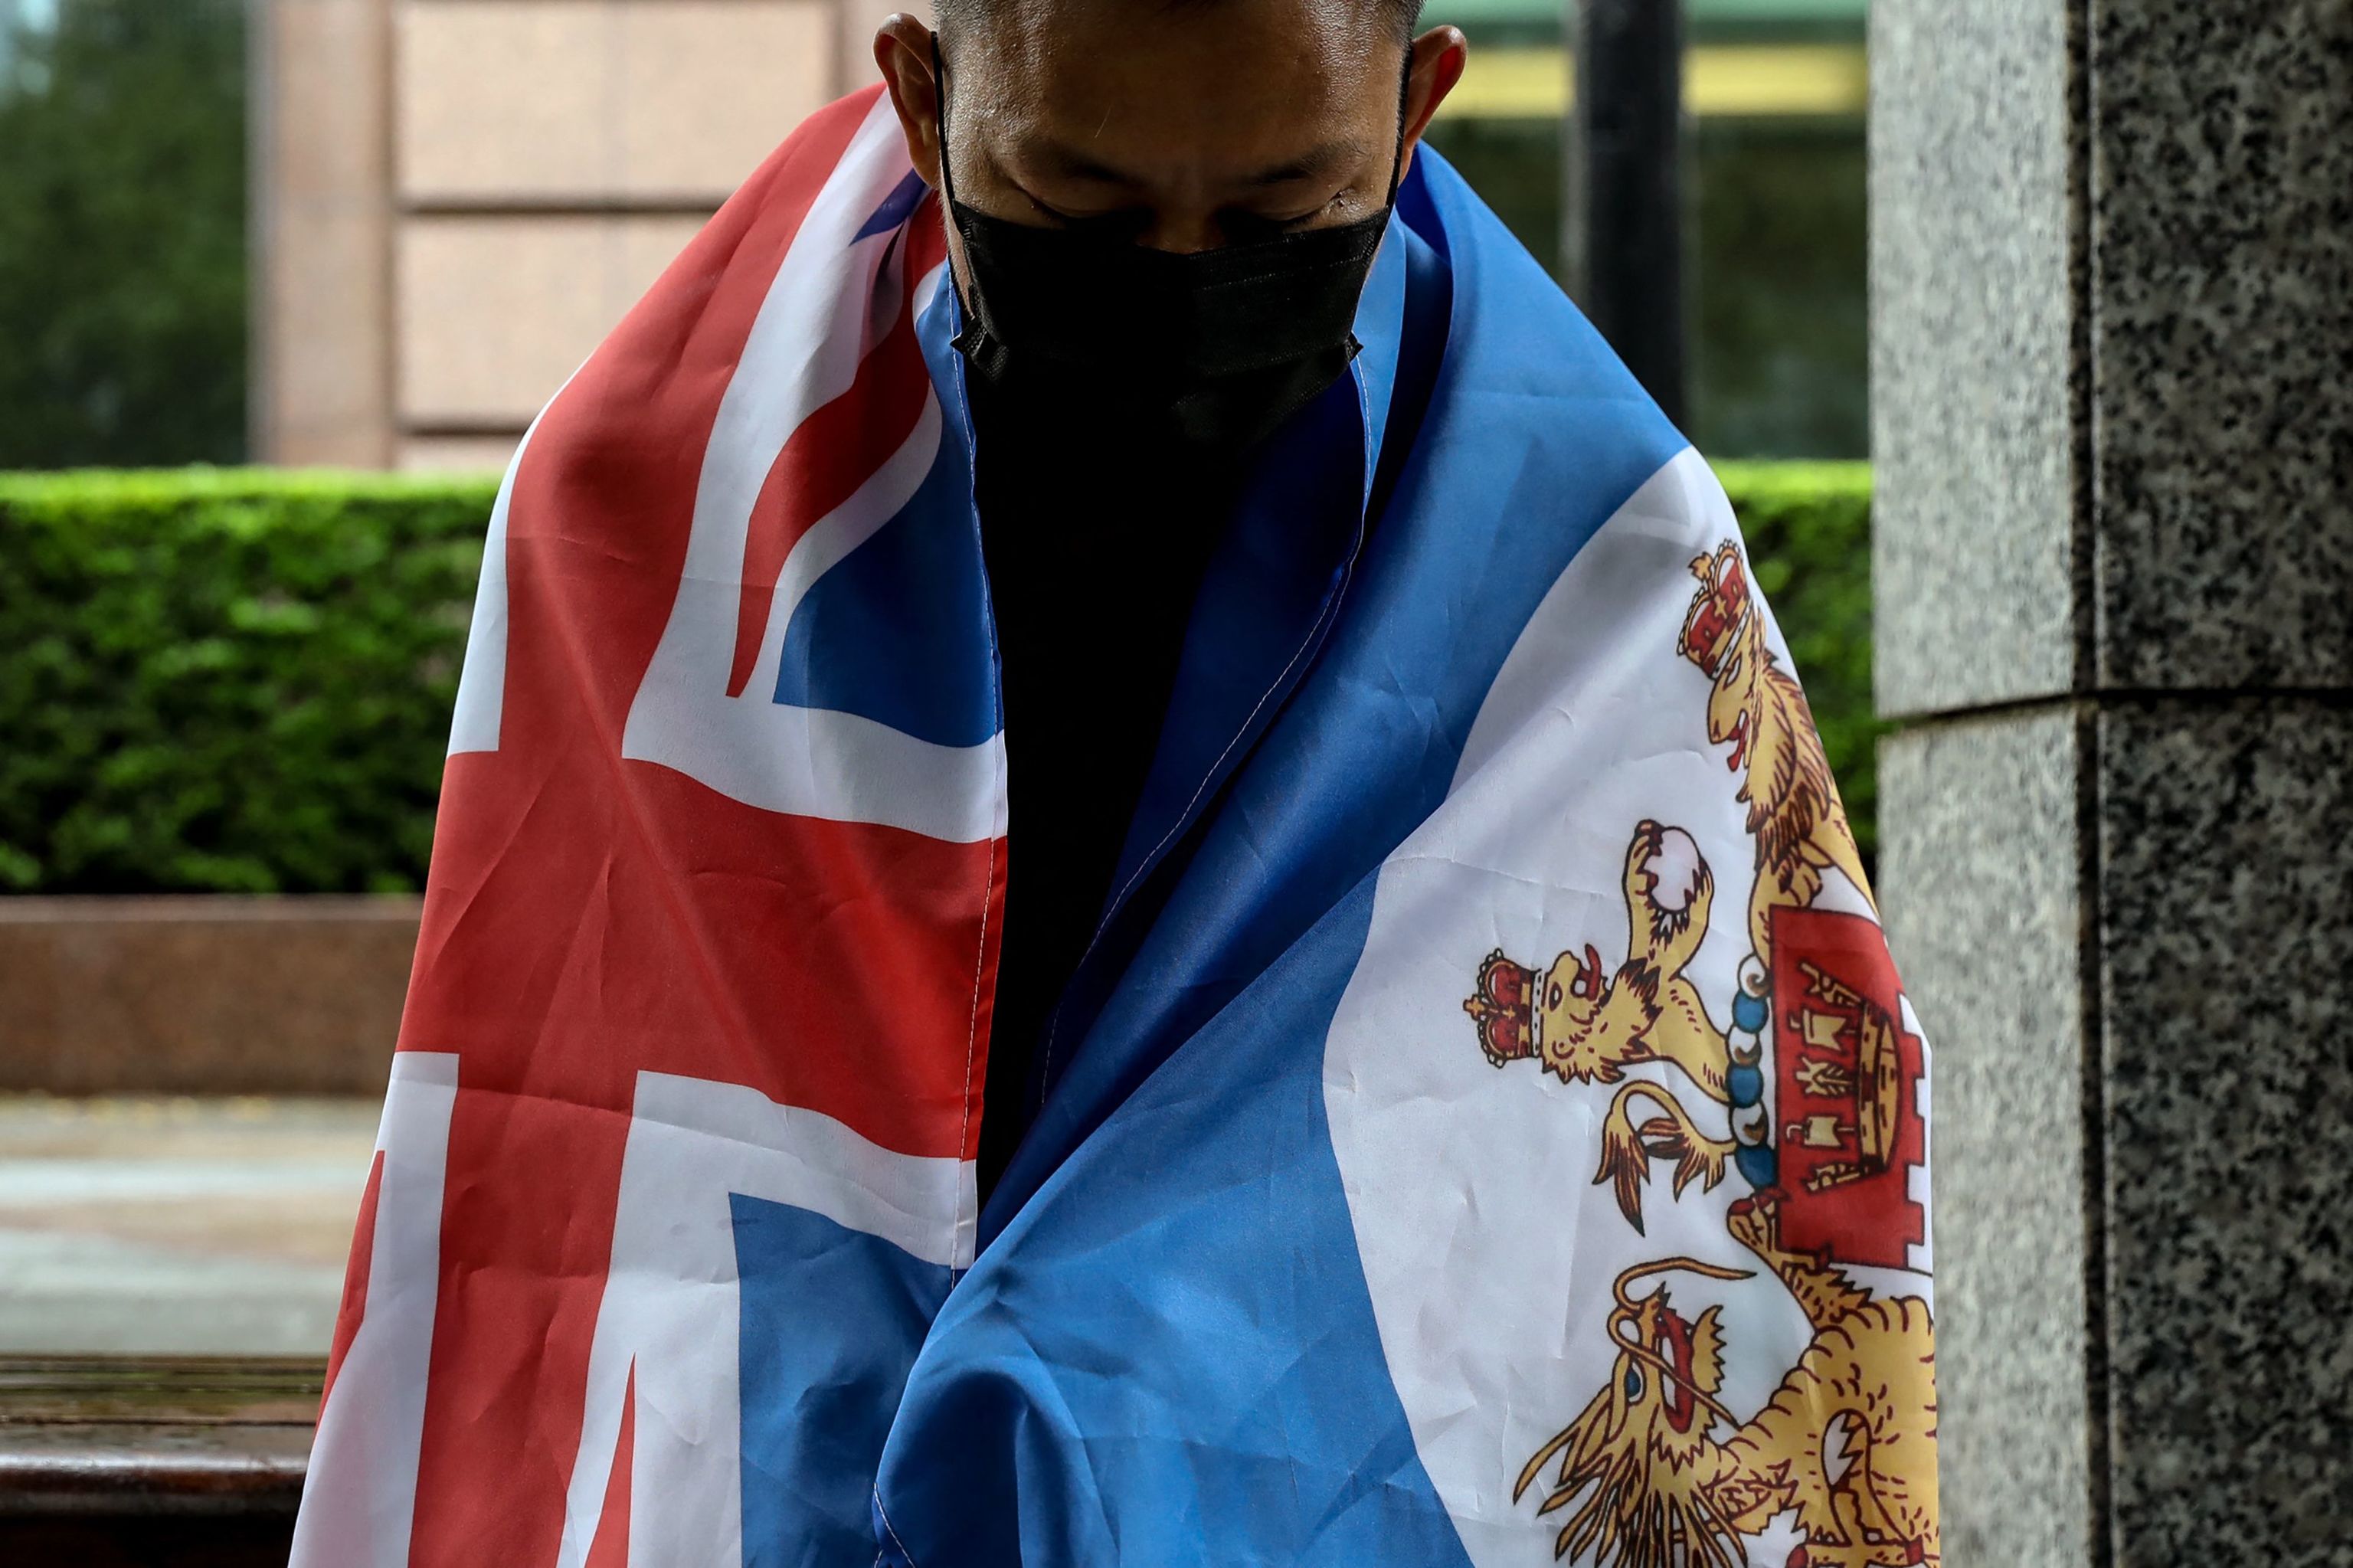 Un hongkonés residente en Taiwán luce la bandera colonial británica de Hong Kong, en Taipei.